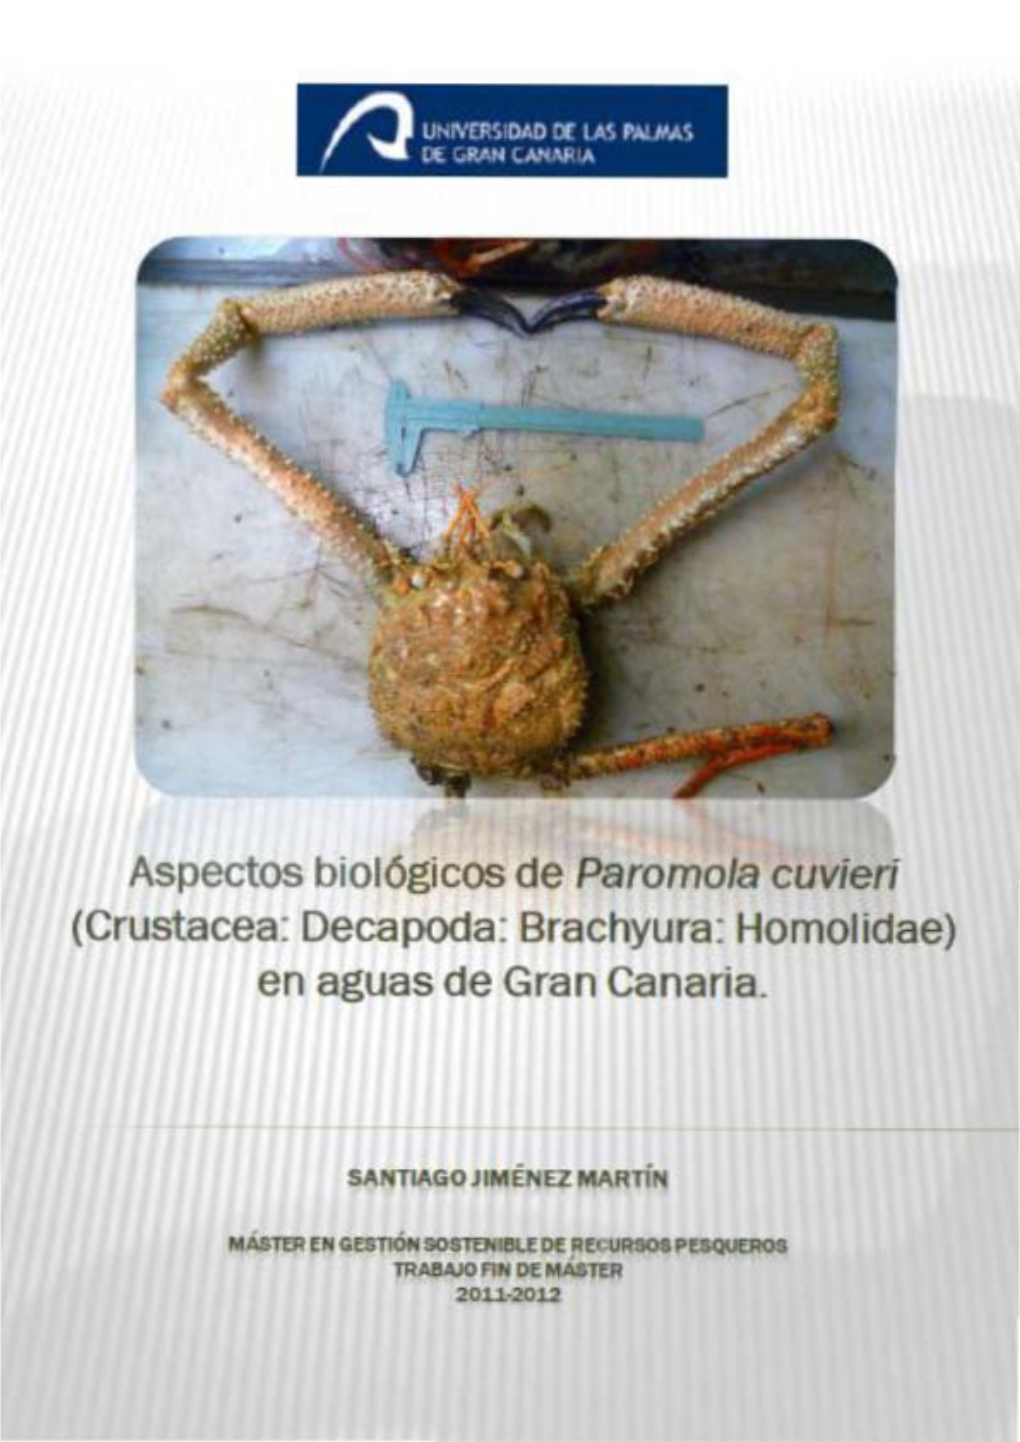 Paromola Cuvieri (Crustacea: Decapada: Brachyura: Homolidae) En Aguas De Gran Canaria